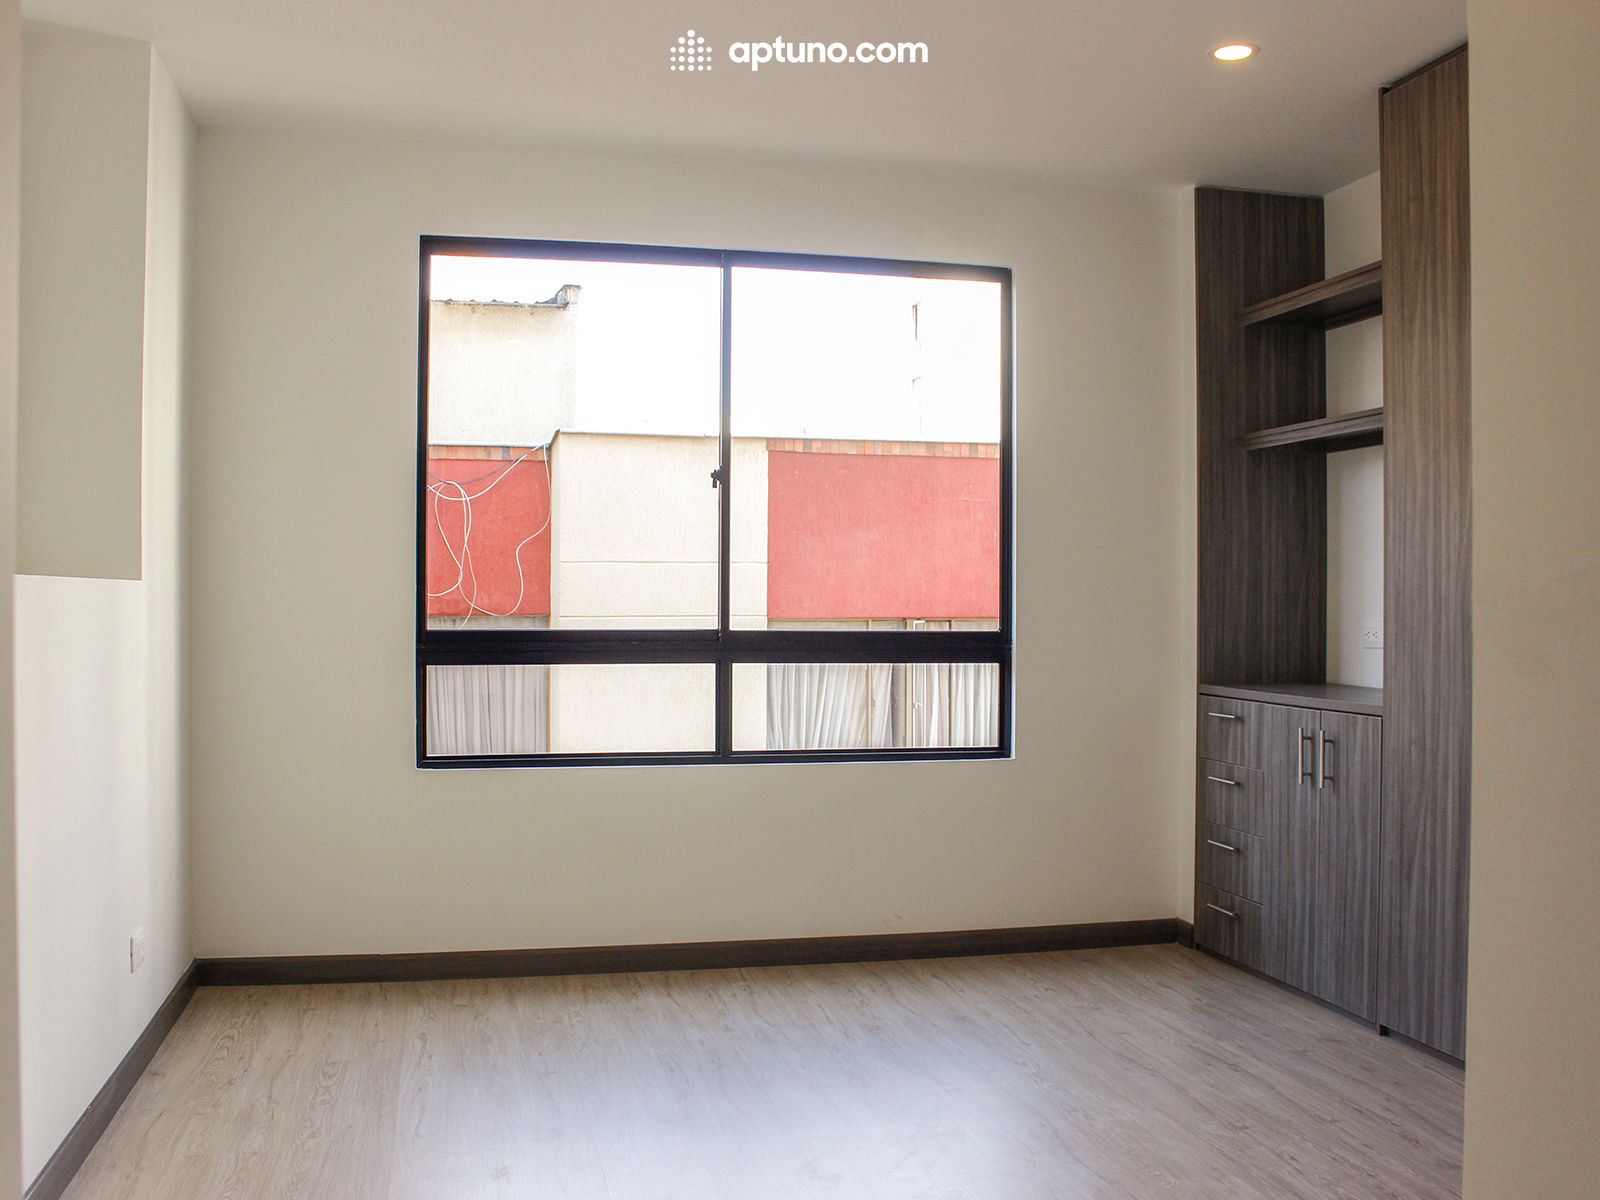 Apartamento en arriendo Caobos Salazar 56 m² - $ 2.160.000